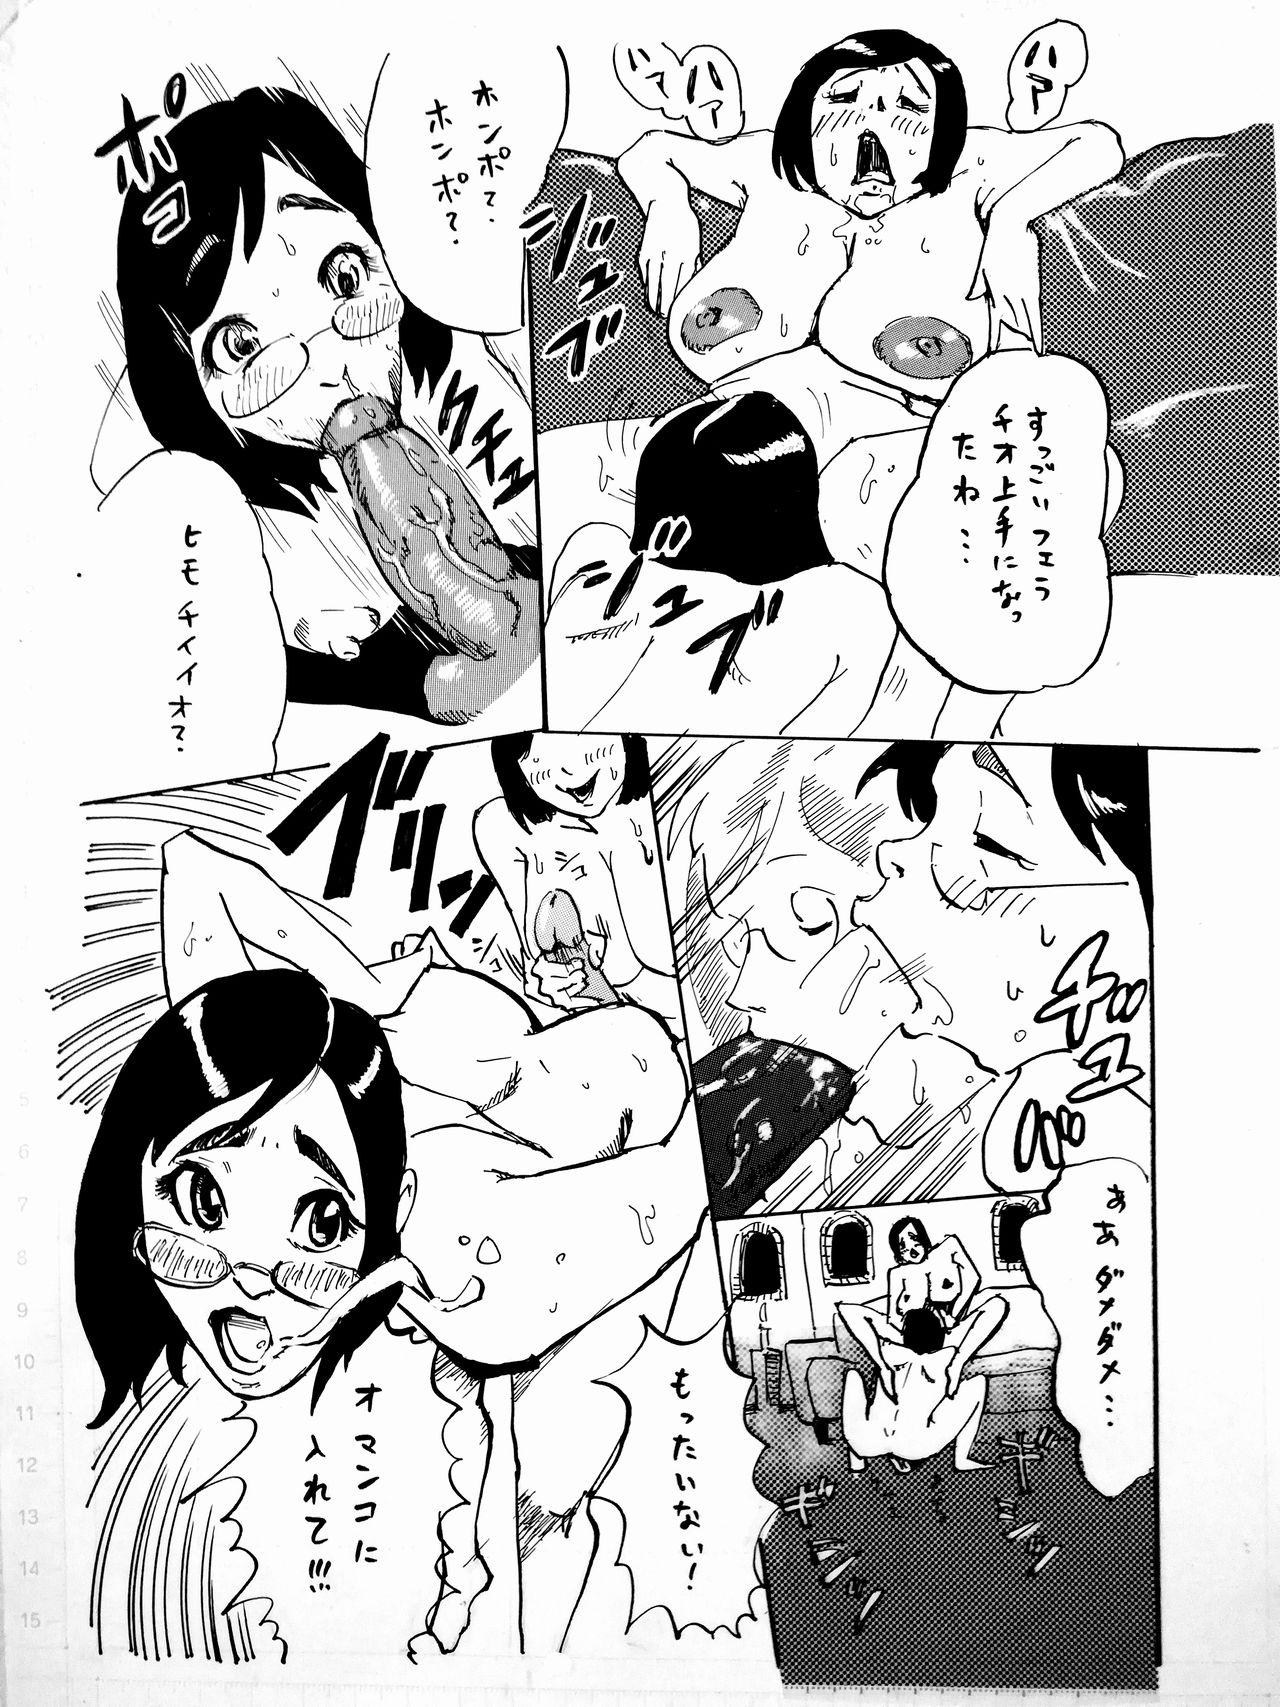 Ball Busting Manga o Kaku no wa Tairyoku ga Iru - Original Gemidos - Picture 1